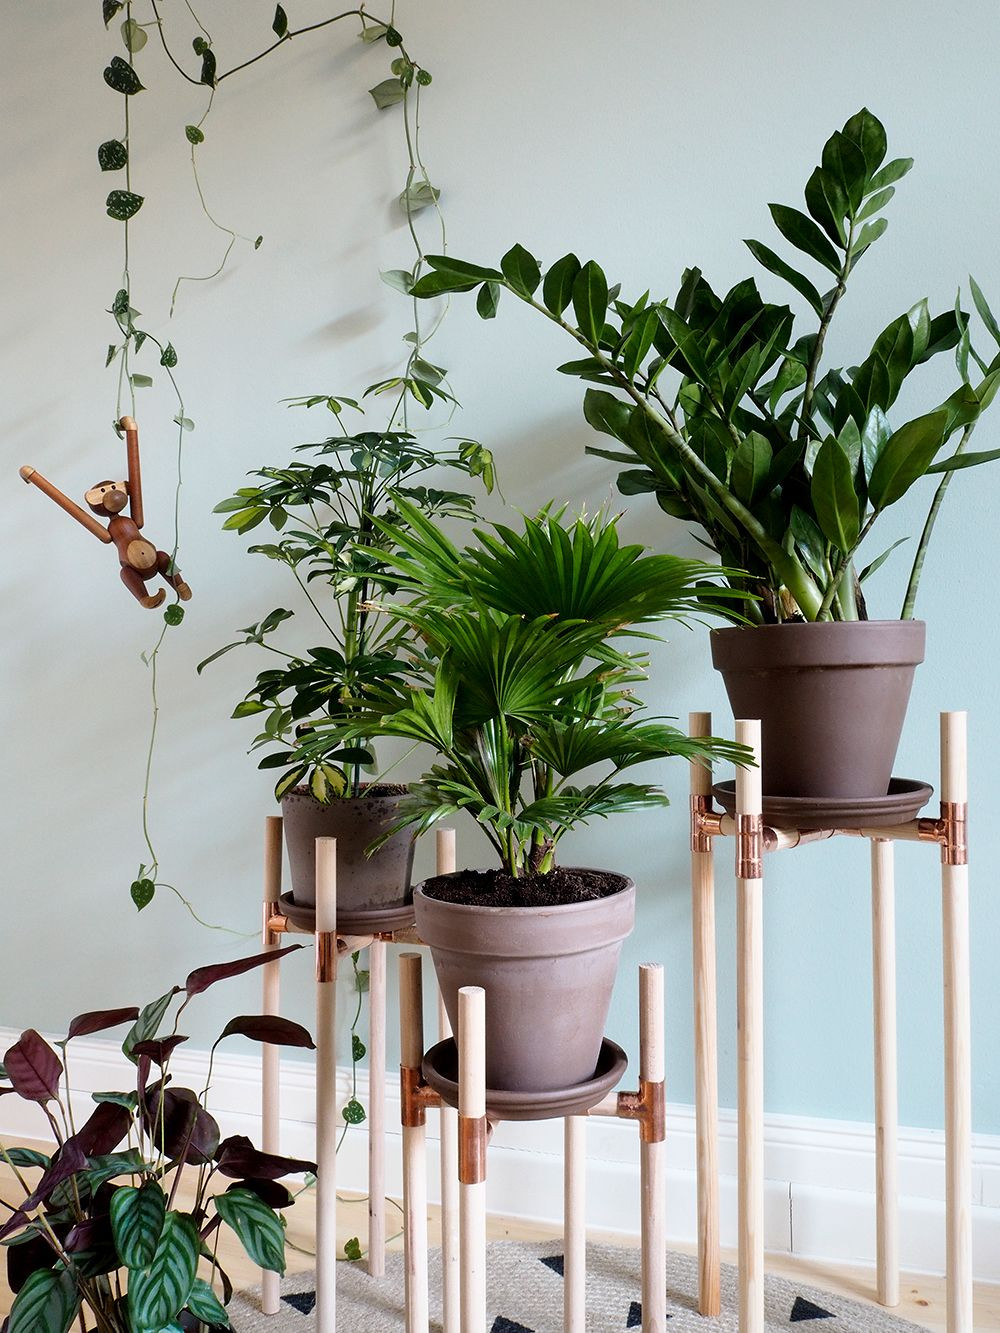 Best ideas about DIY Indoor Plant Stand
. Save or Pin Dschungel zu Hause DIY Pflanzenständer aus Kupfer und Now.